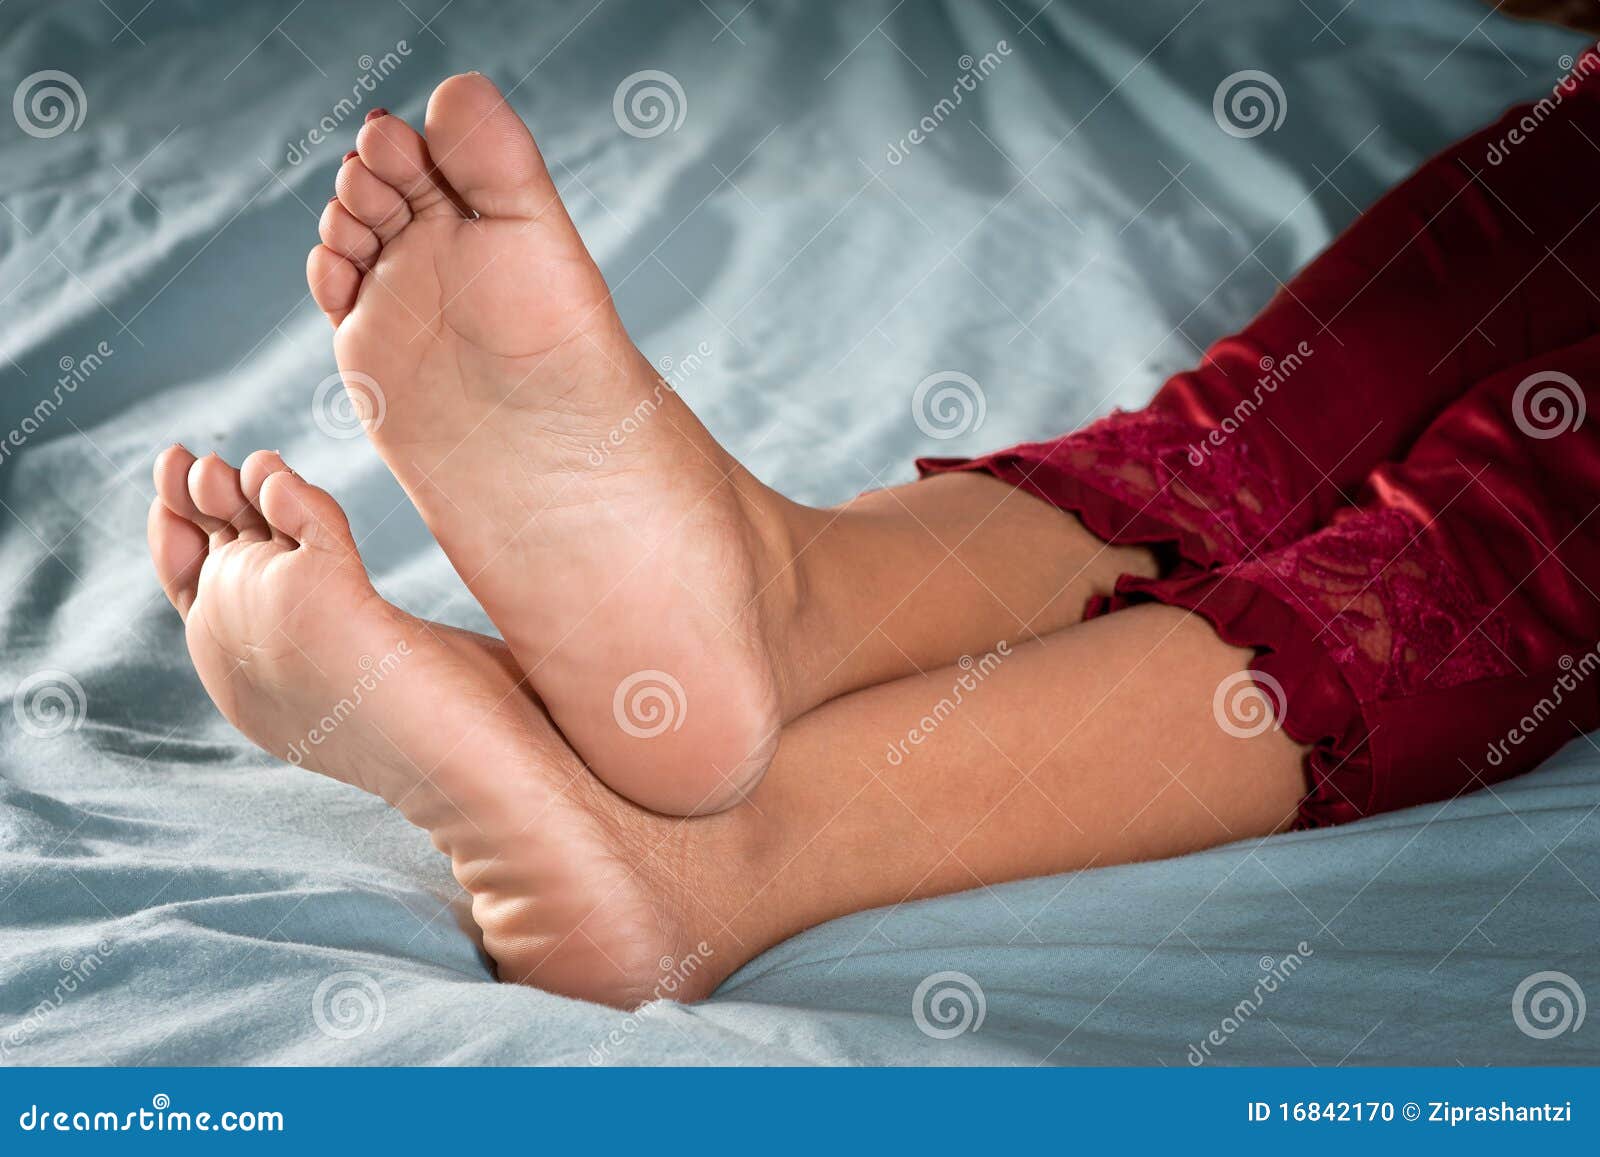 Indian girl foot soles